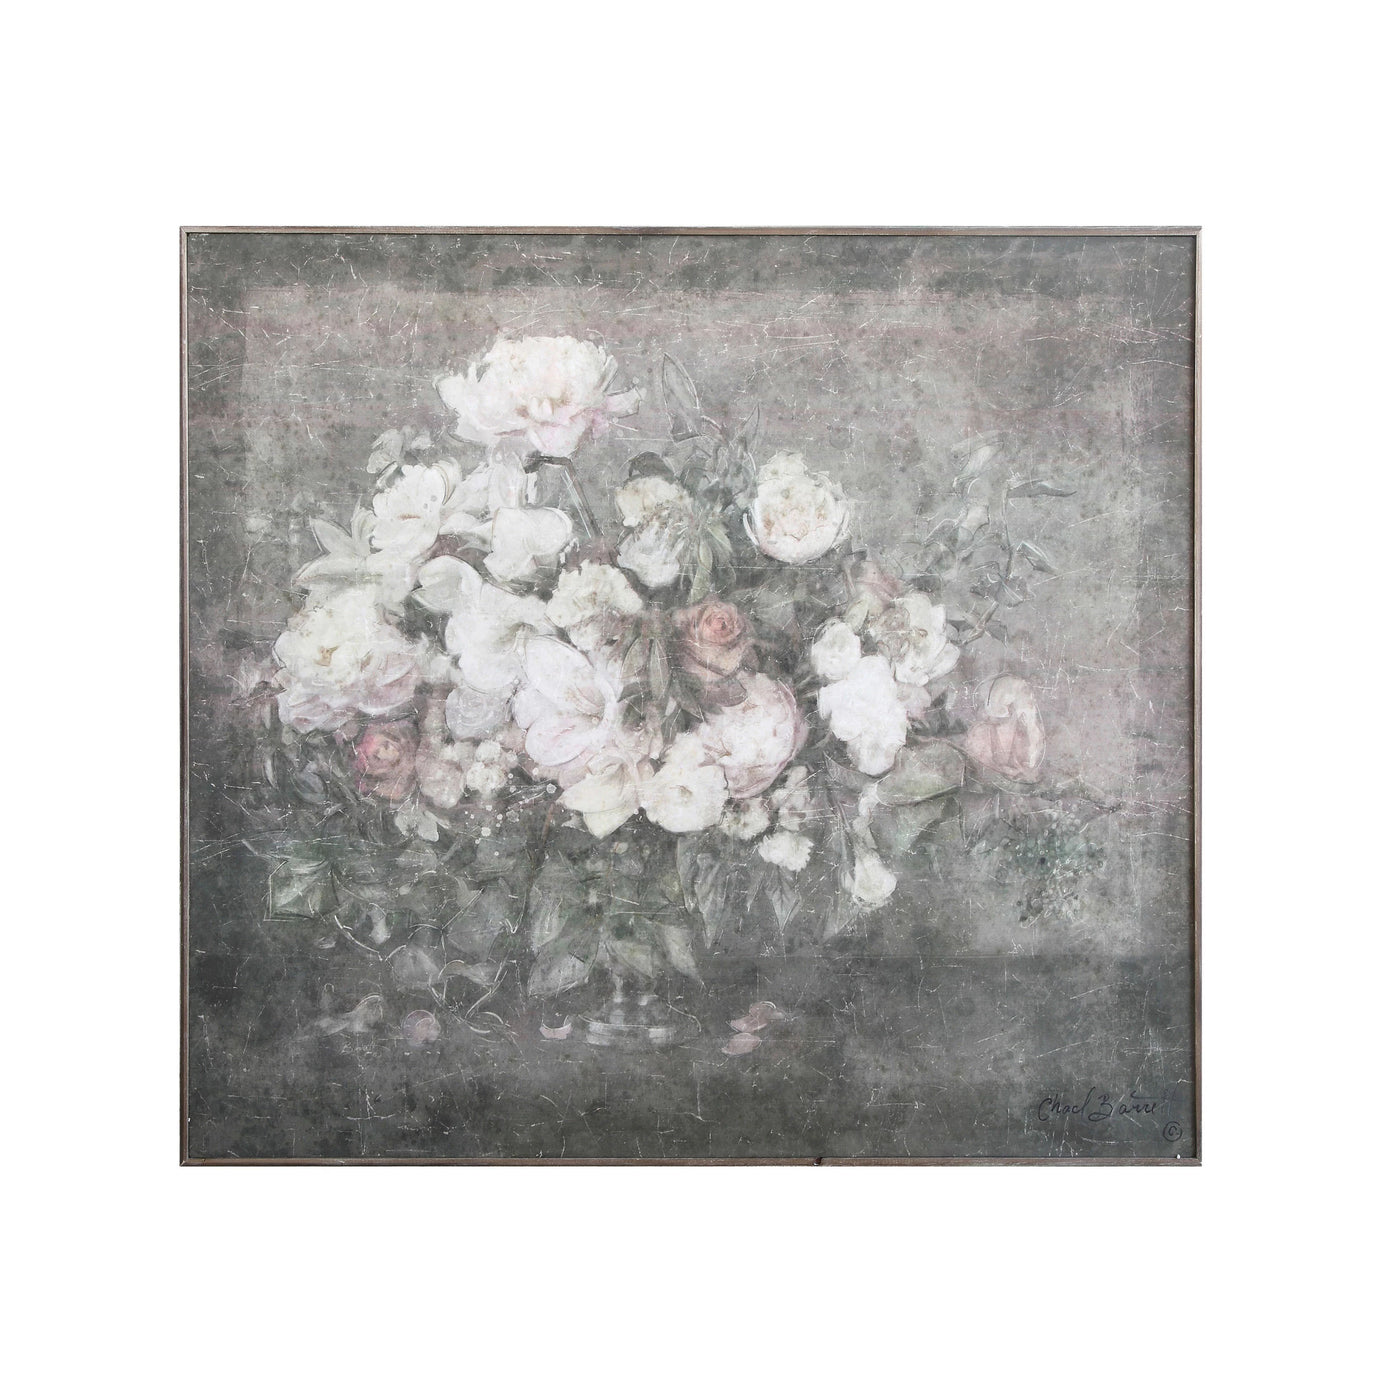 The Flower Arrangement Canvas - Floral Art Decor - More Coming